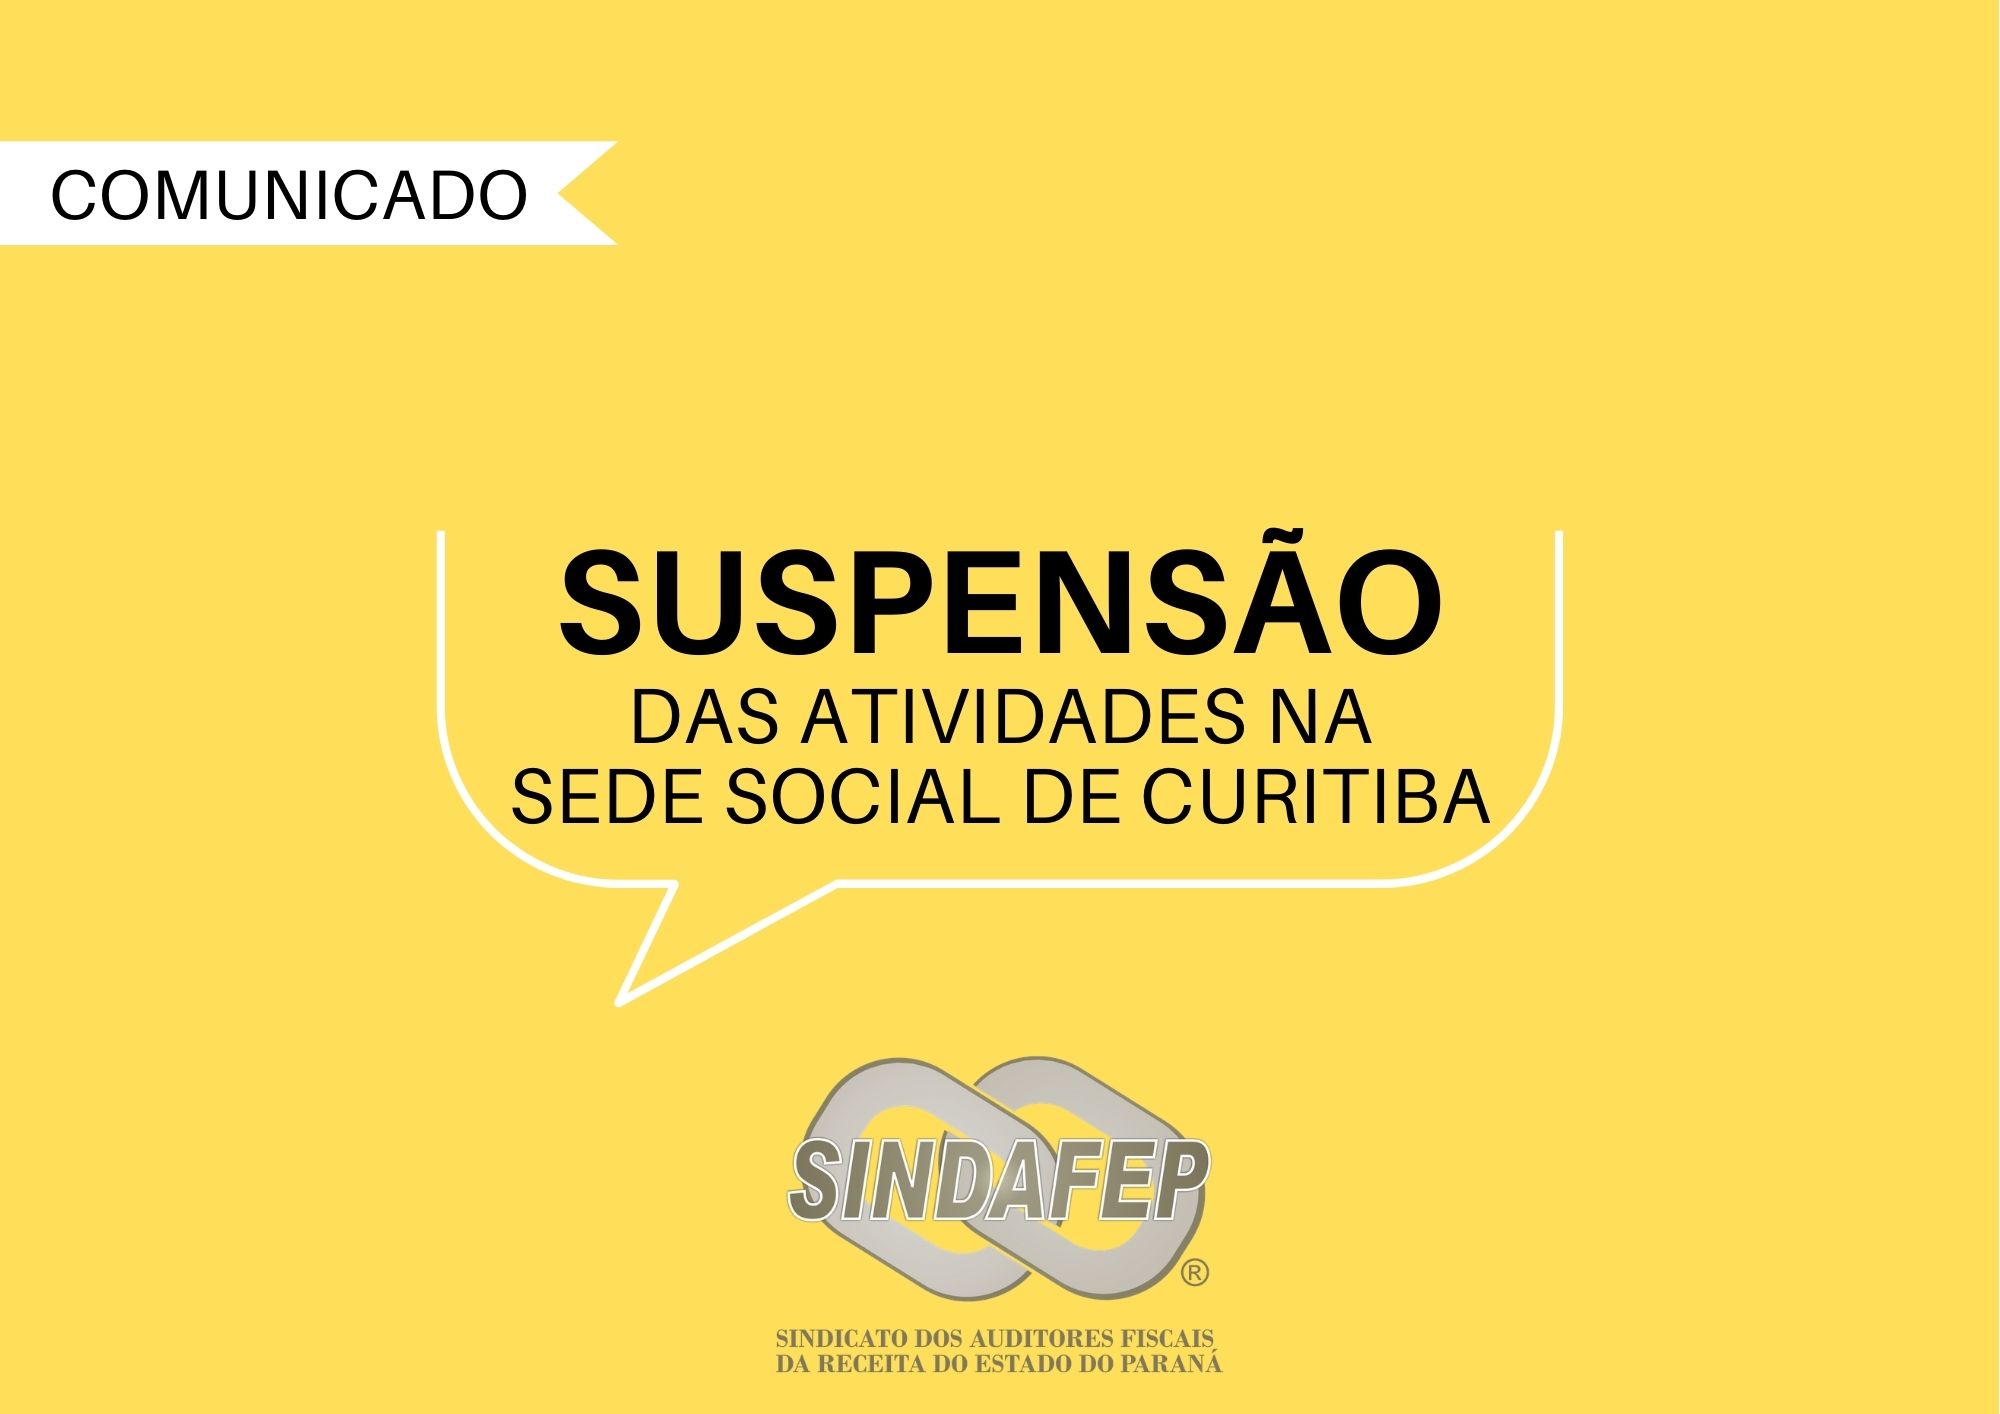 Sindafep prorroga suspensão das atividades na sede social de Curitiba por mais 31 dias